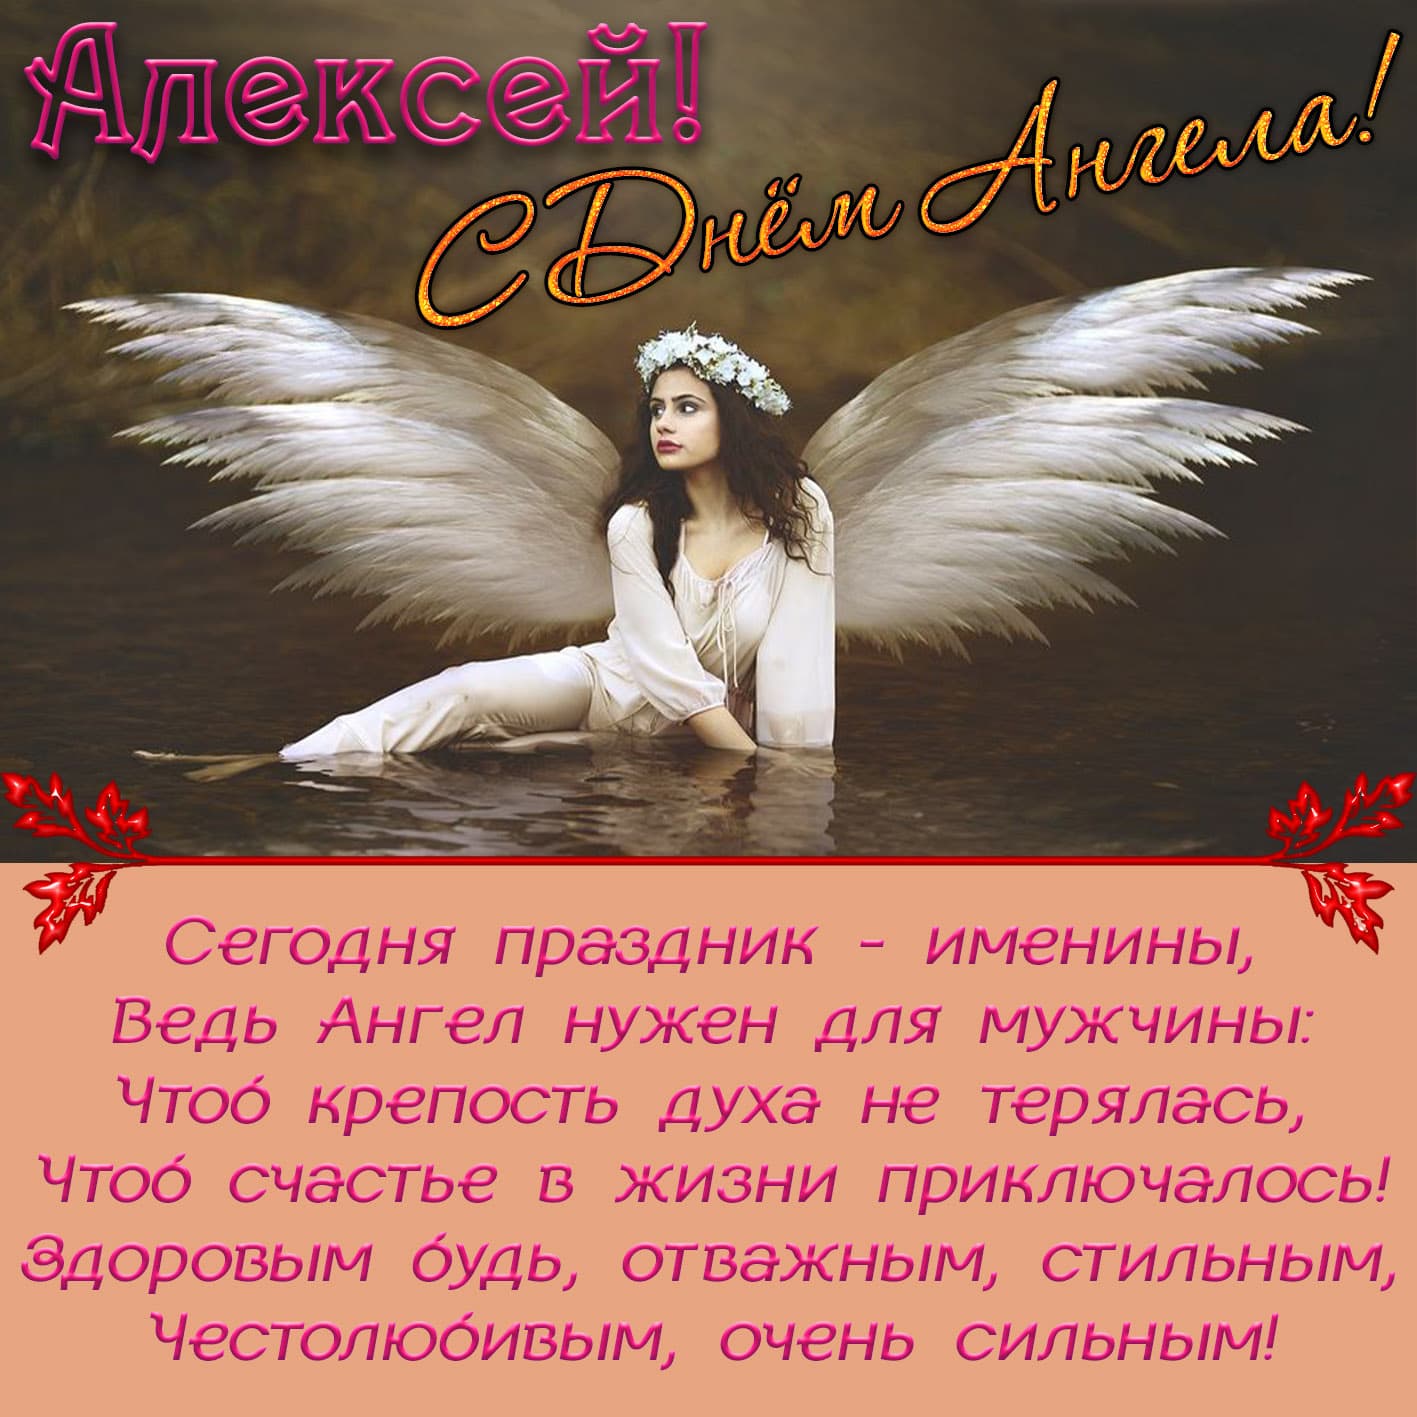 Поздравительная открытка с днем ангела, алексей